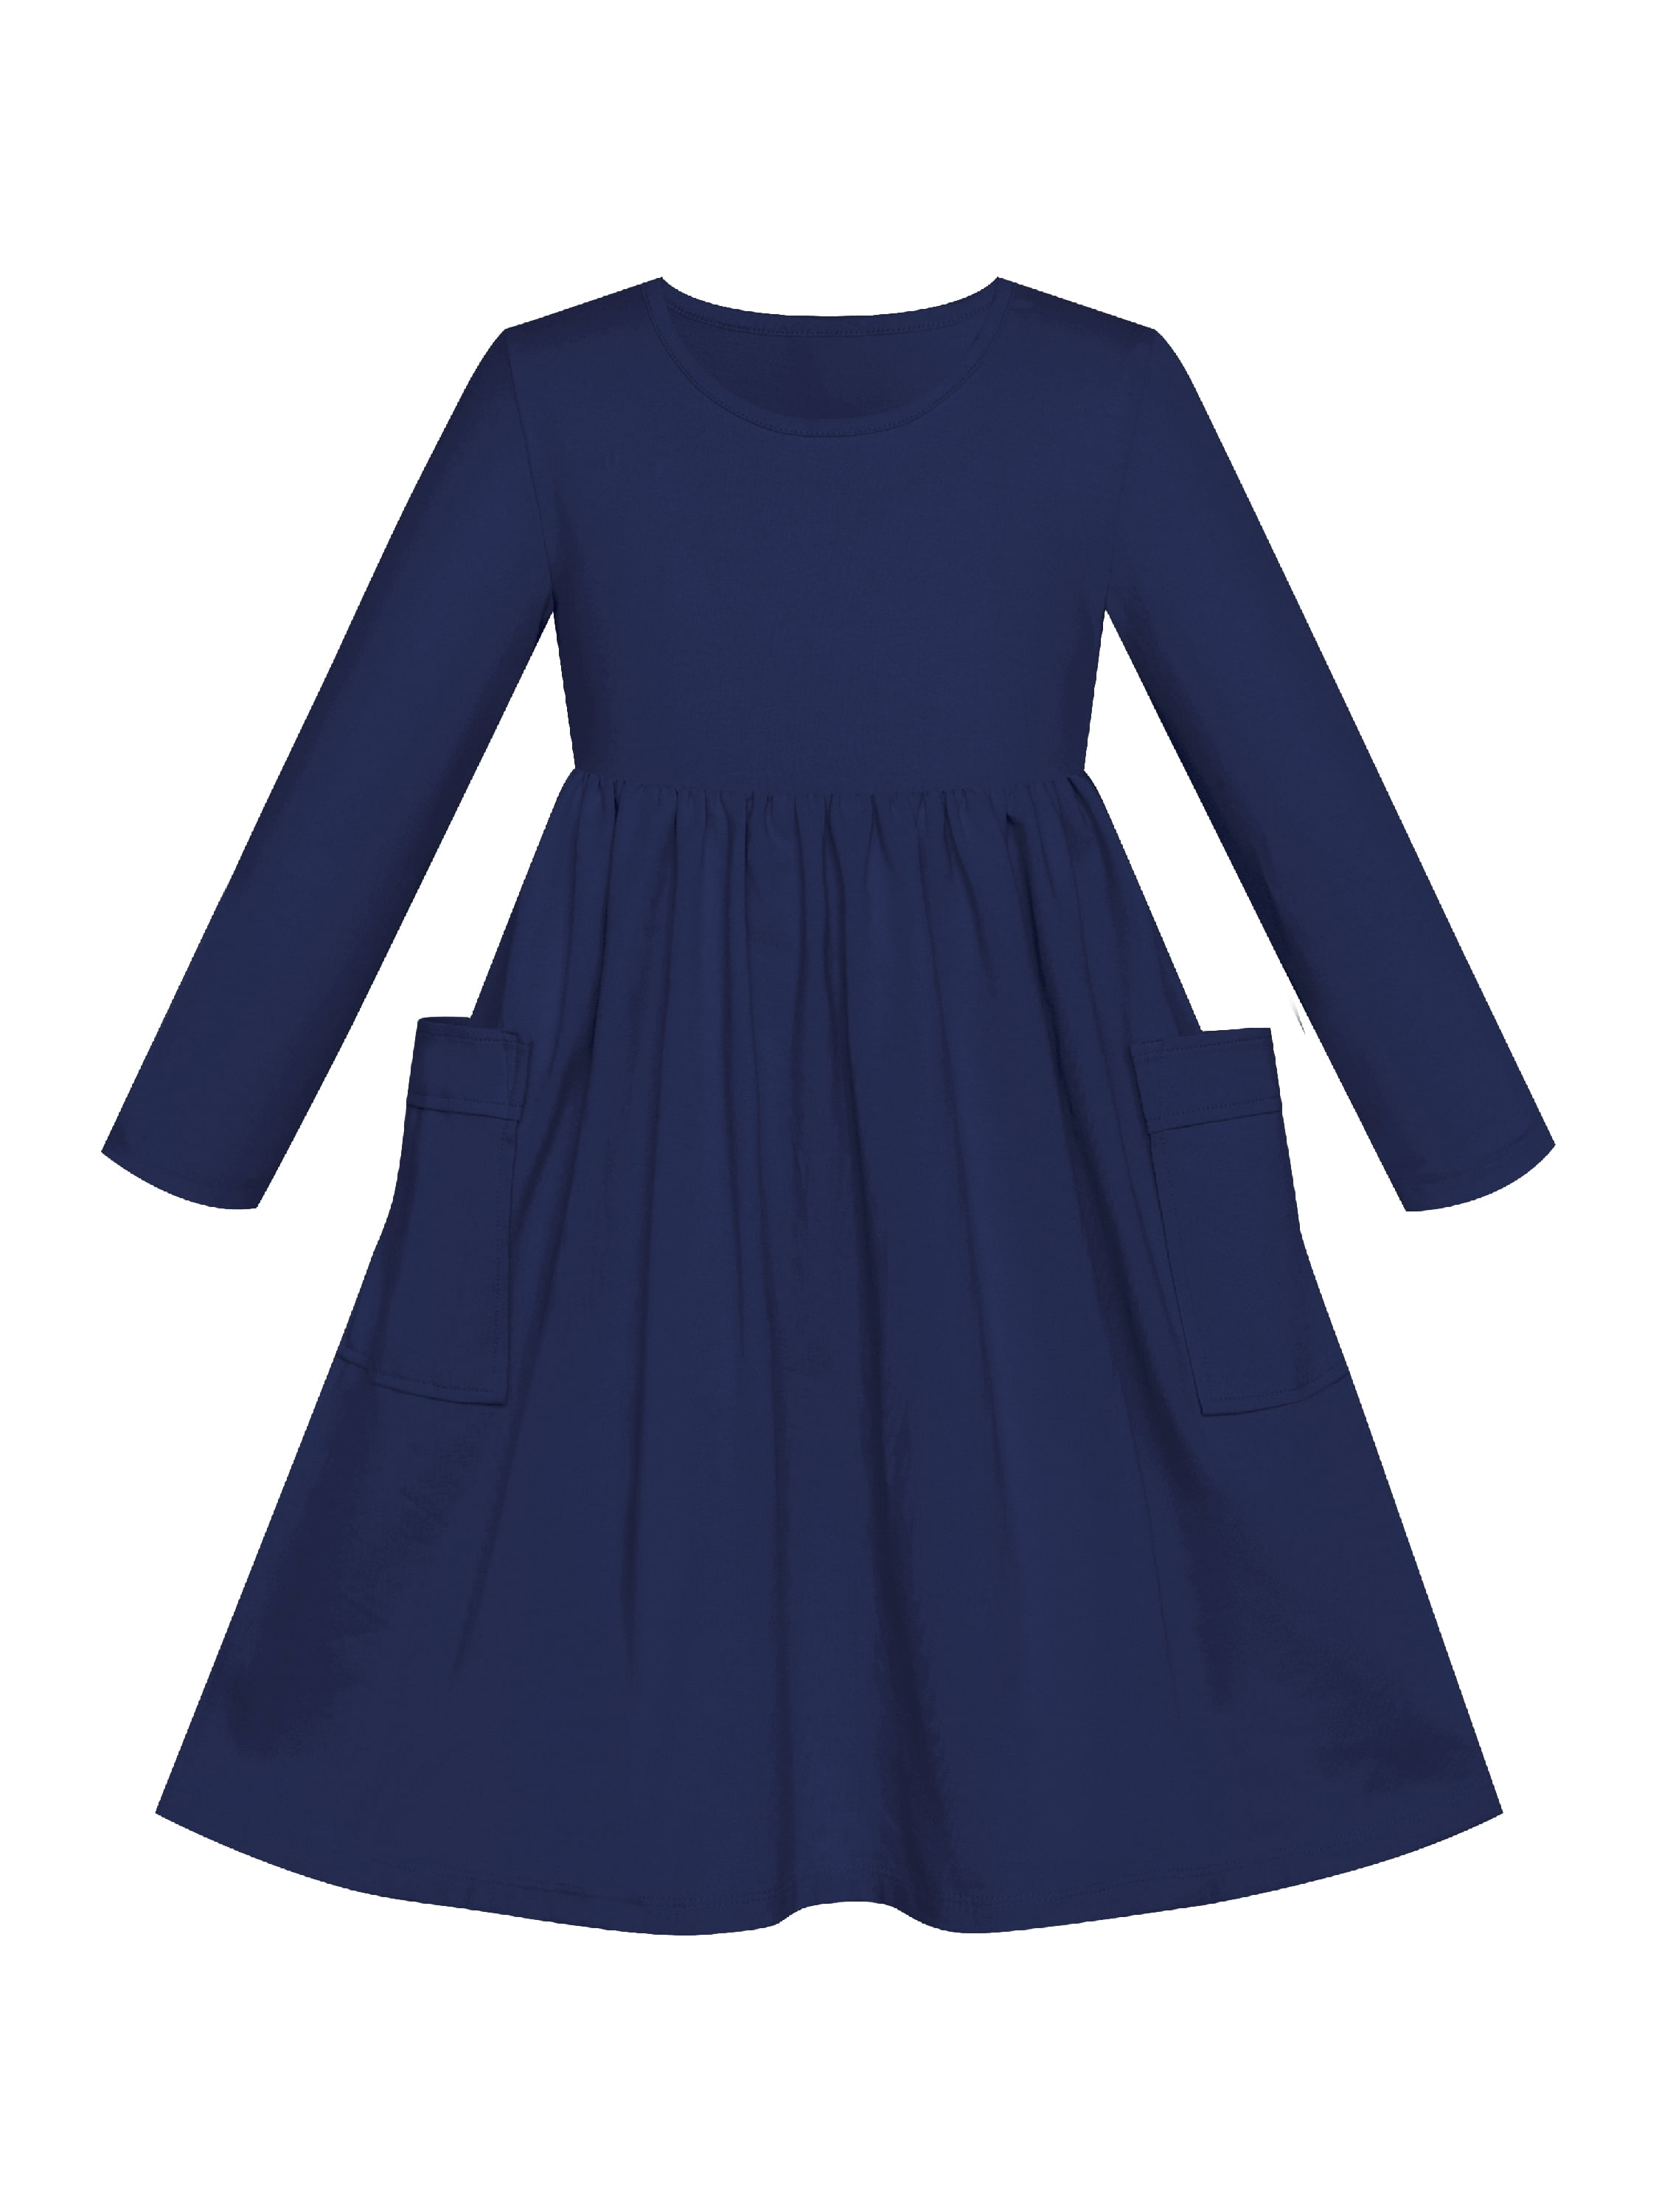 Girls Dress Navy Blue Casual Cotton Long Sleeve Dress 7 Years - Walmart.com